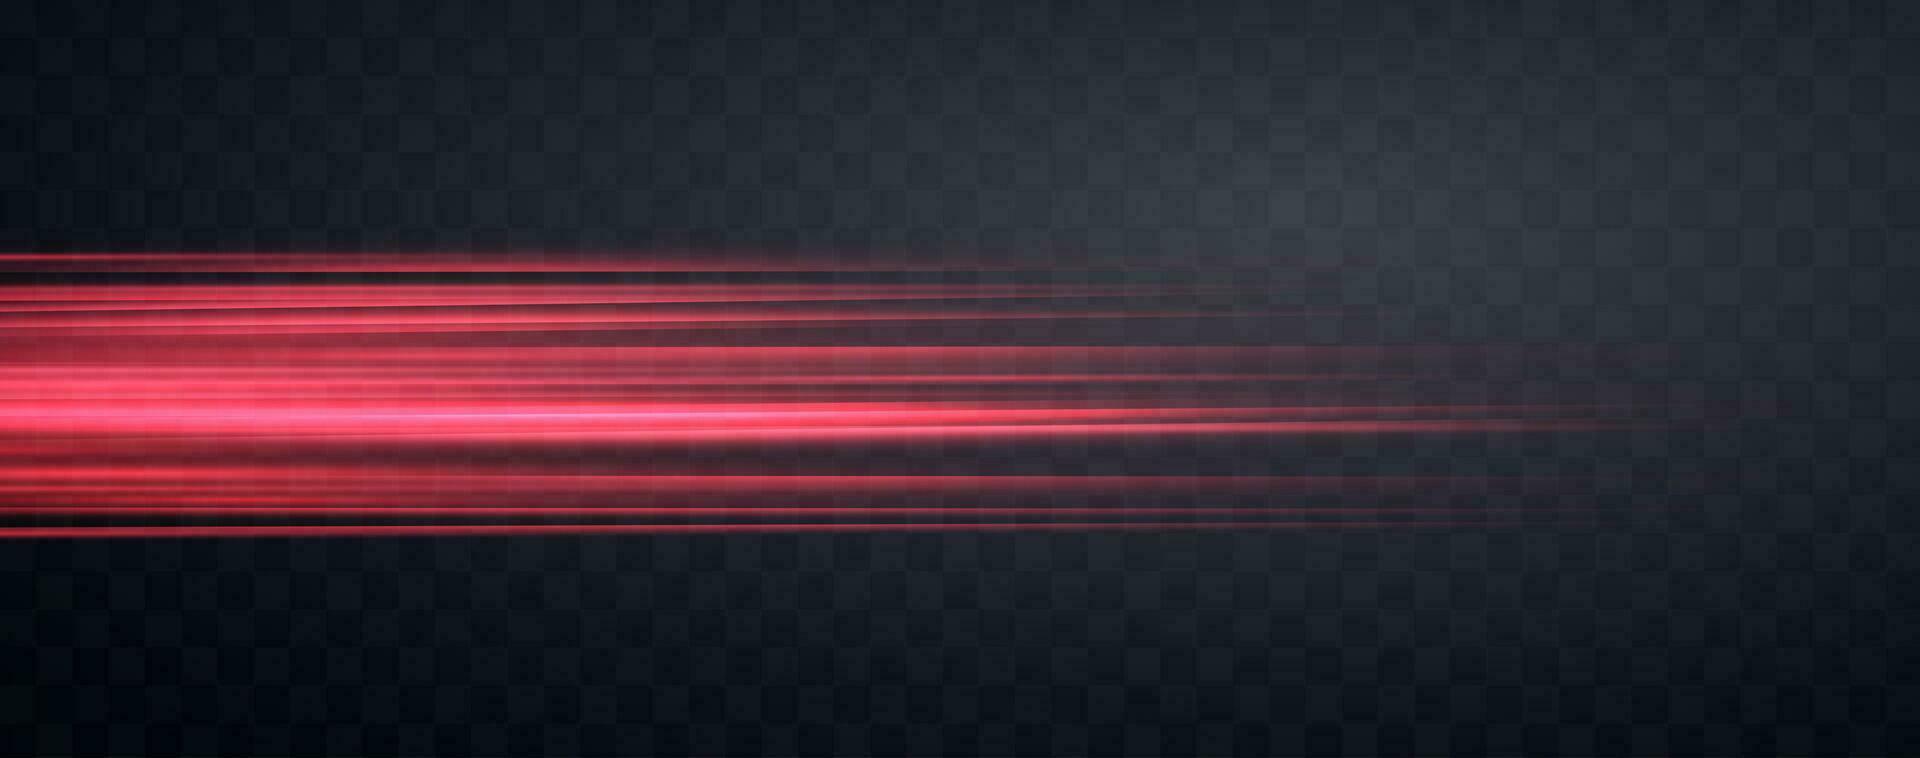 Geschwindigkeit Strahlen, Geschwindigkeit Licht Neon- Fluss, Zoomen im Bewegung Wirkung, rot glühen Geschwindigkeit Linien, bunt Licht Wanderwege, Streifen. abstrakt Hintergrund, Vektor Illustration.